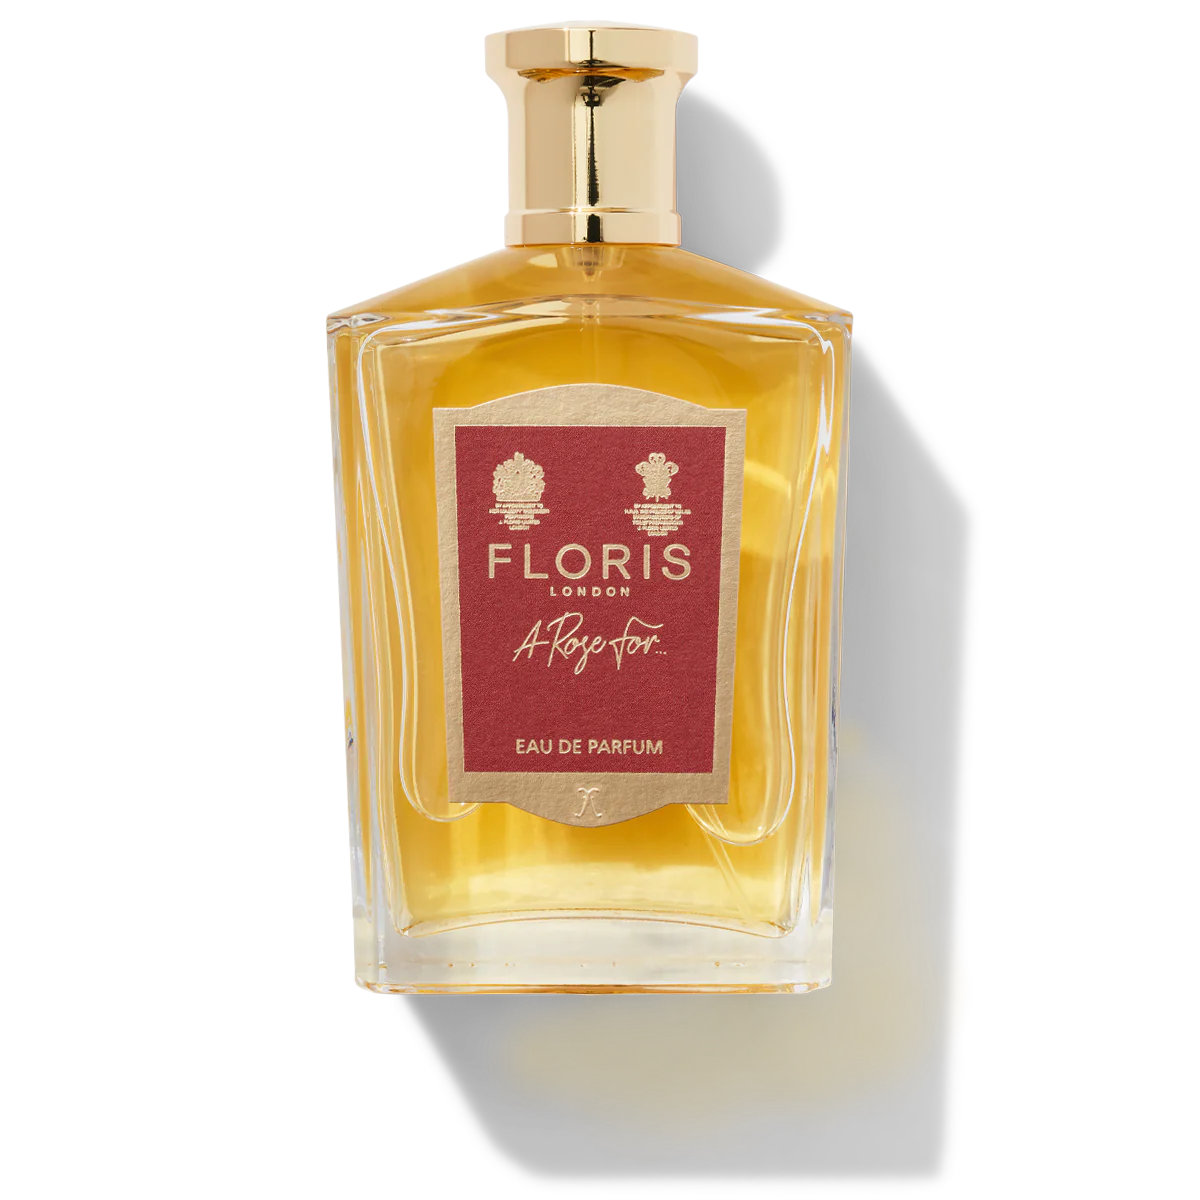 Floris London A Rose For... Eau de Parfum 100ml